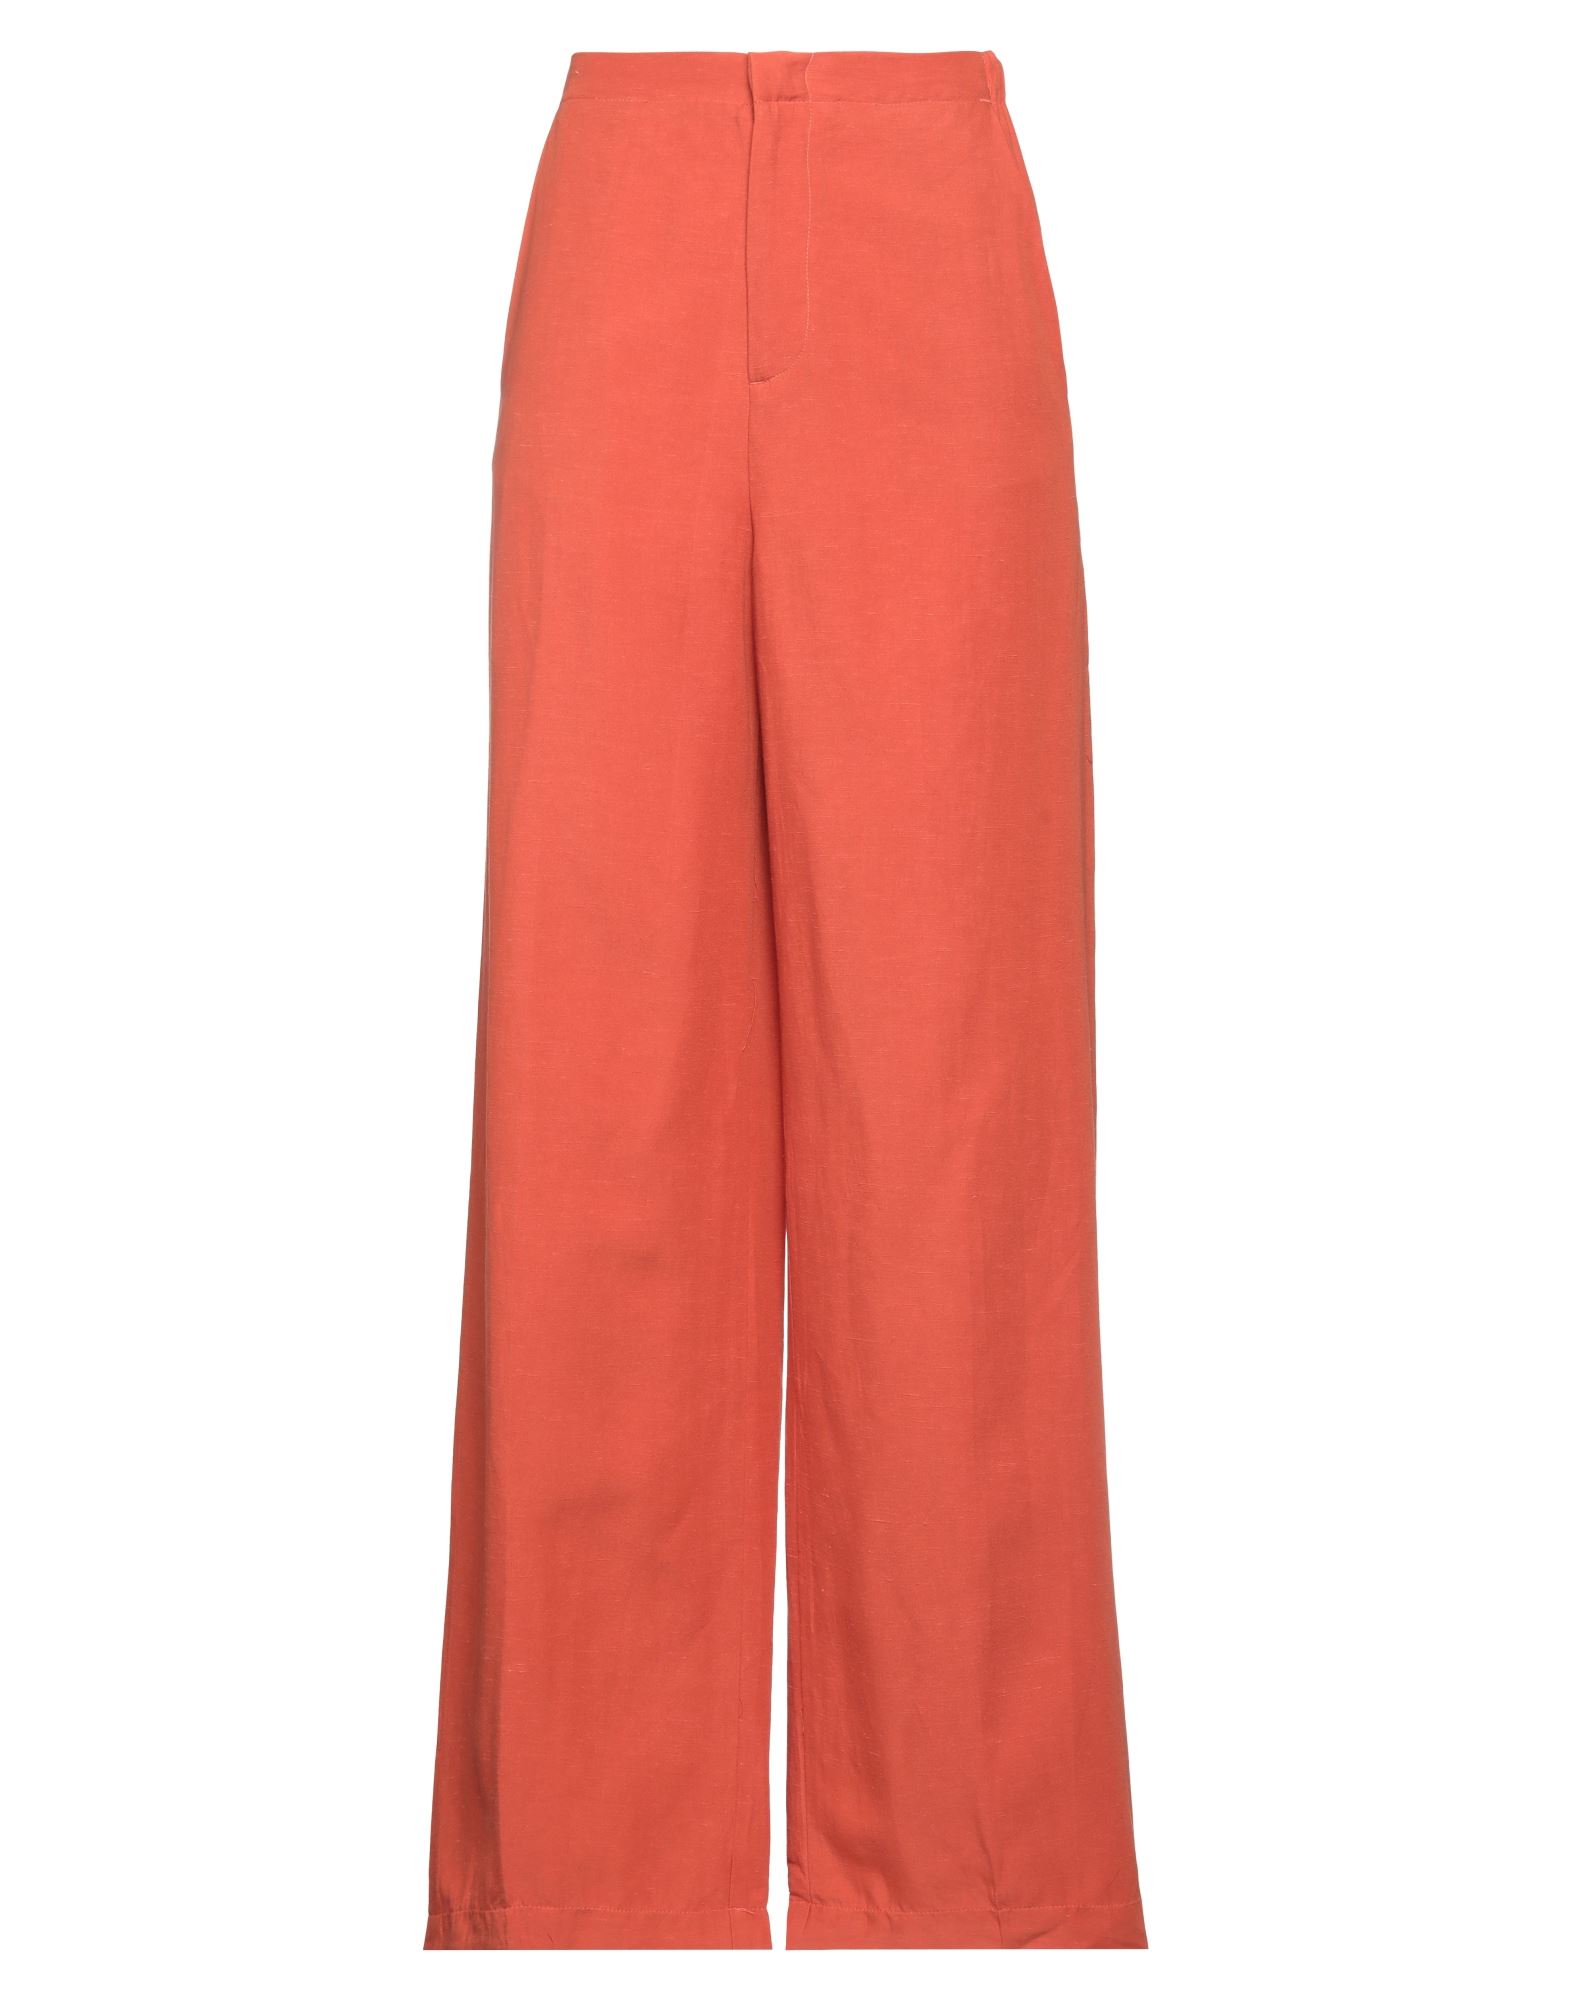 Shop Re-hash Re_hash Woman Pants Orange Size 29 Viscose, Linen